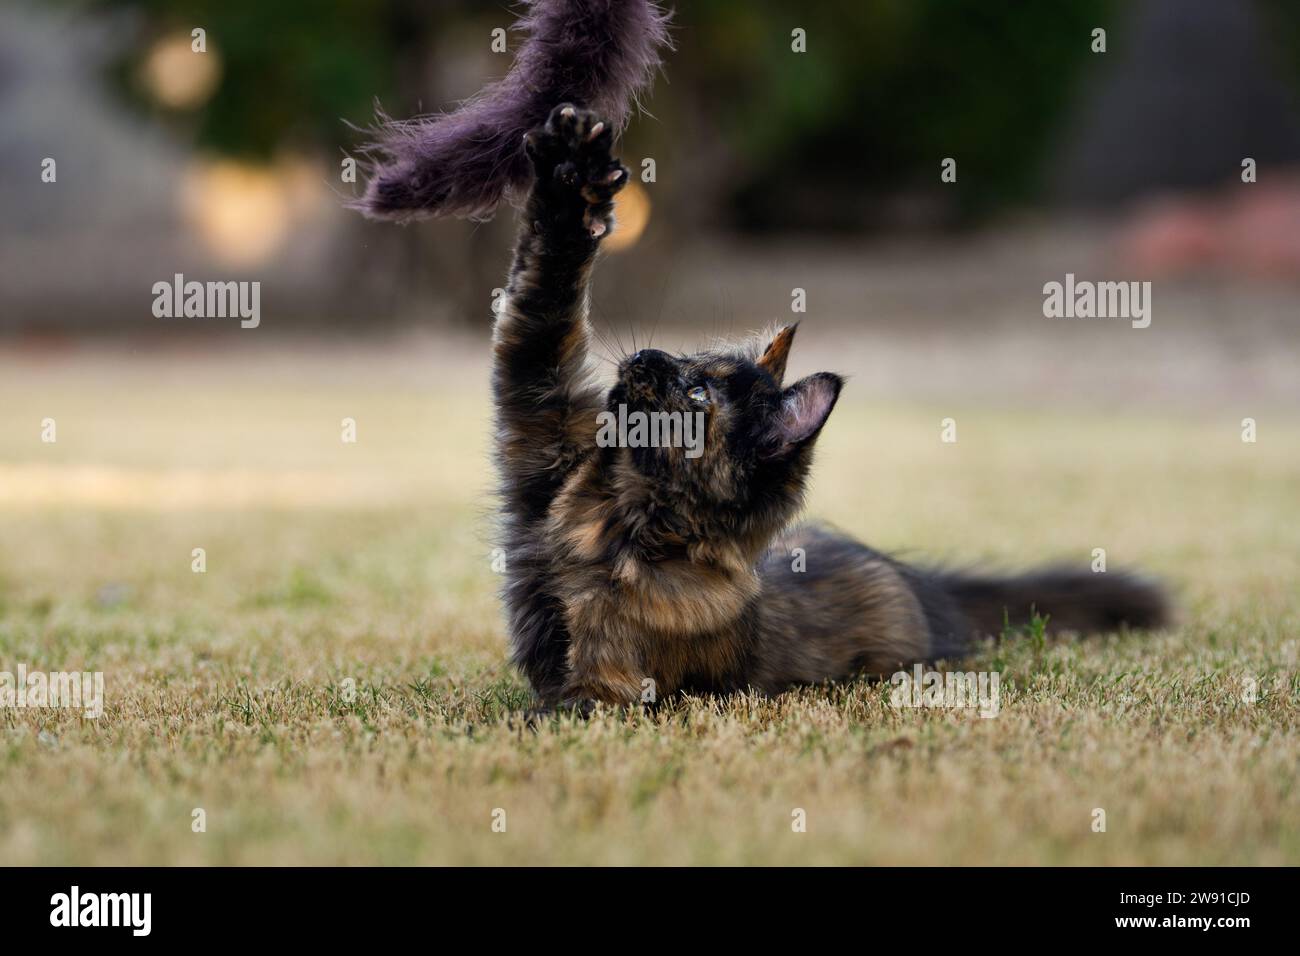 Calico gatta con gli artigli estesi, che cerca un giocattolo mentre giochi nell'erba Foto Stock